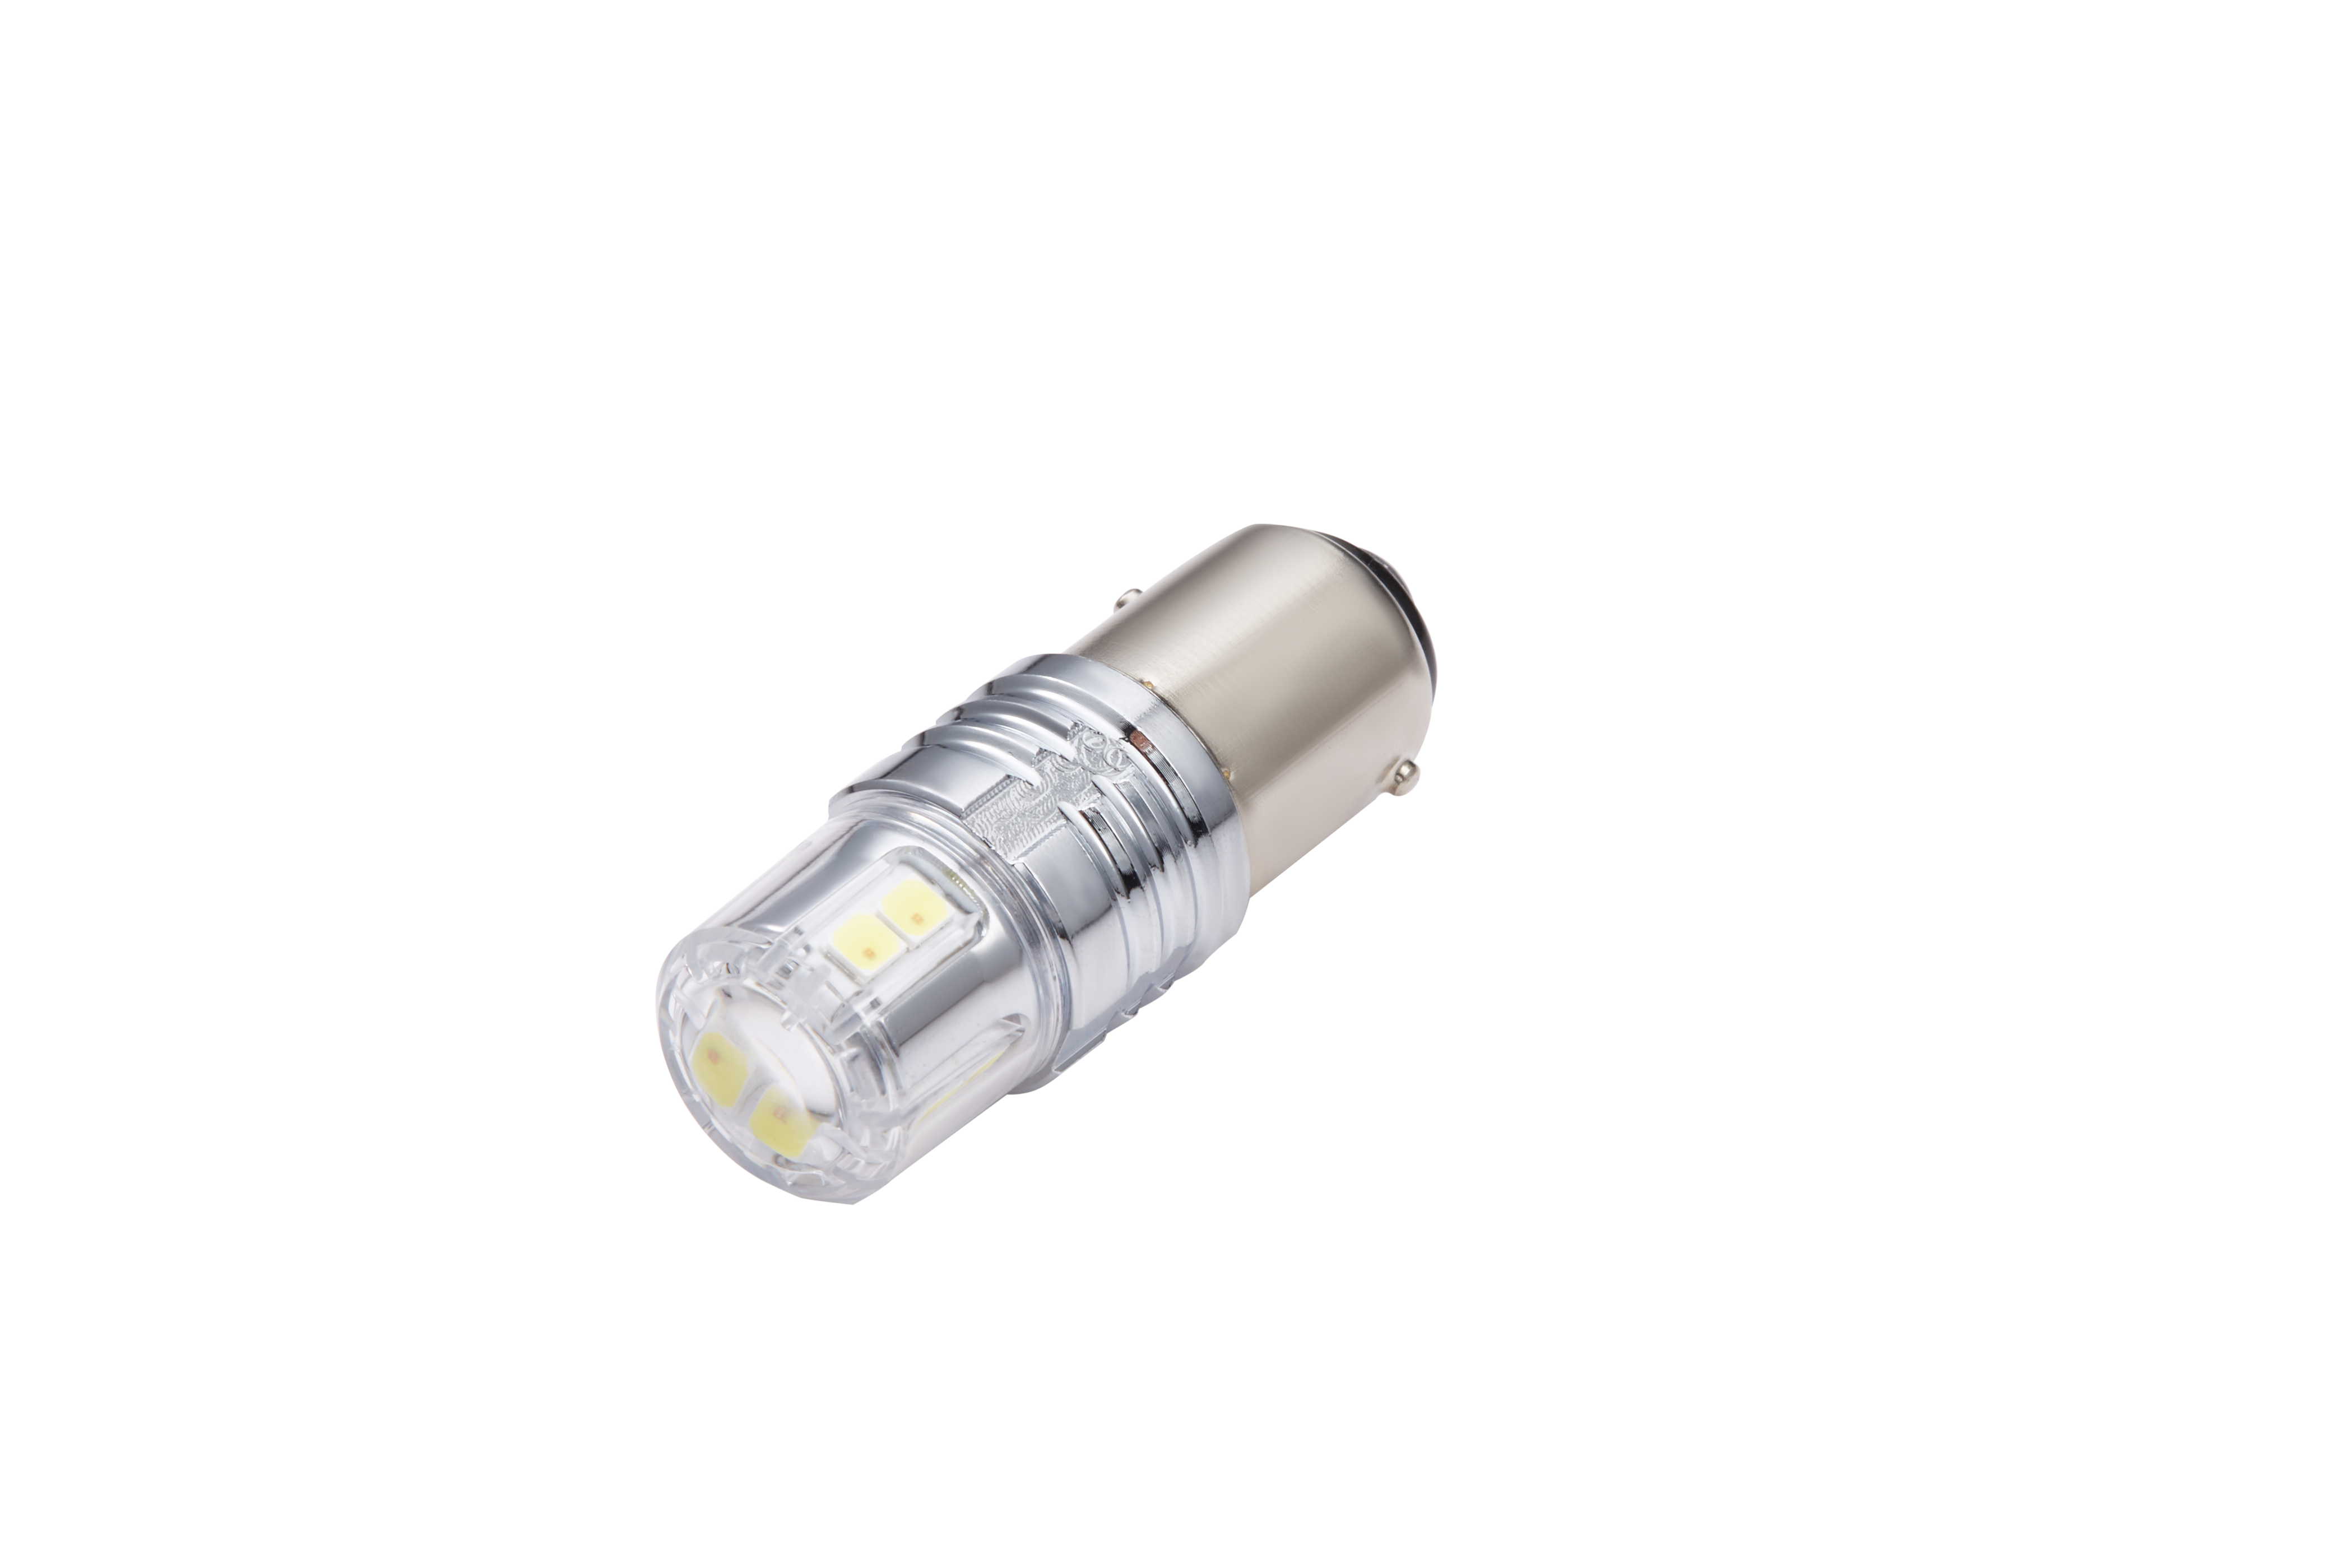 Eklight G4 3157 1157 T20 Amber/white Switchback LED bulb Featured Image